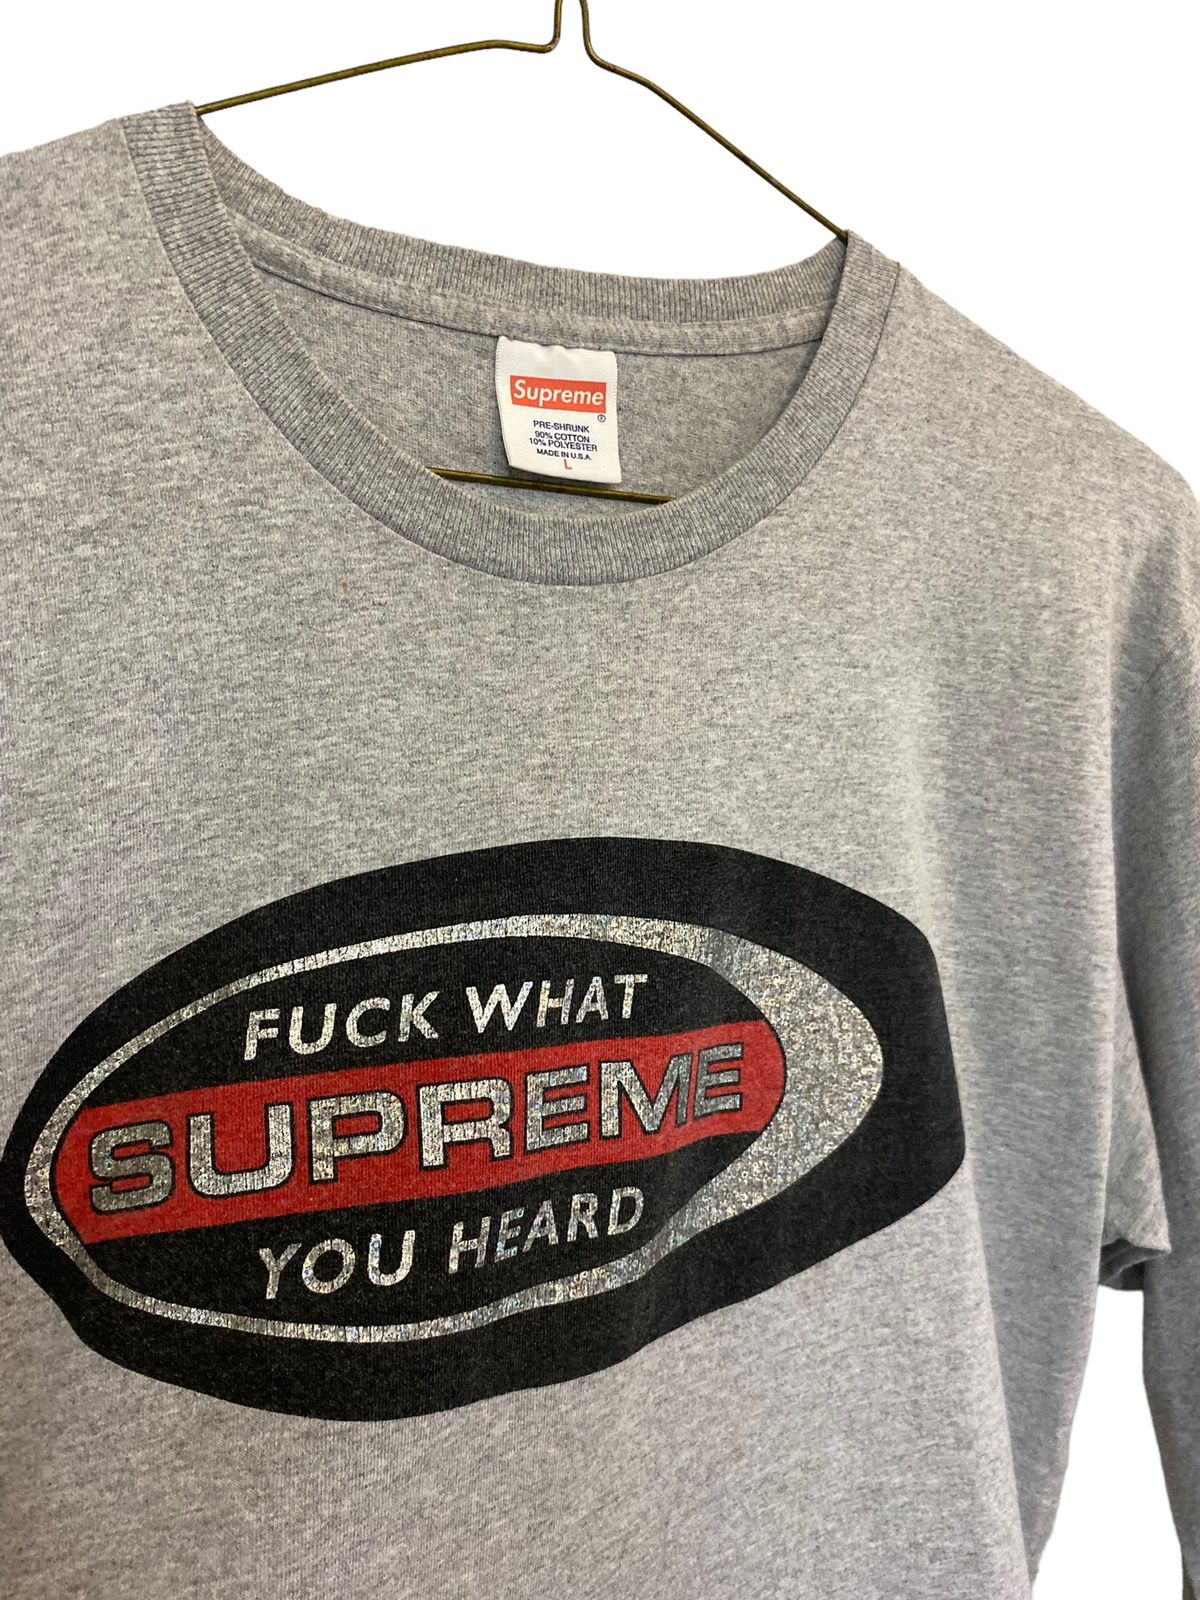 Supreme Supreme "Fuck What You Heard" Long Sleeve T Shirt F/W16 Size US L / EU 52-54 / 3 - 3 Thumbnail